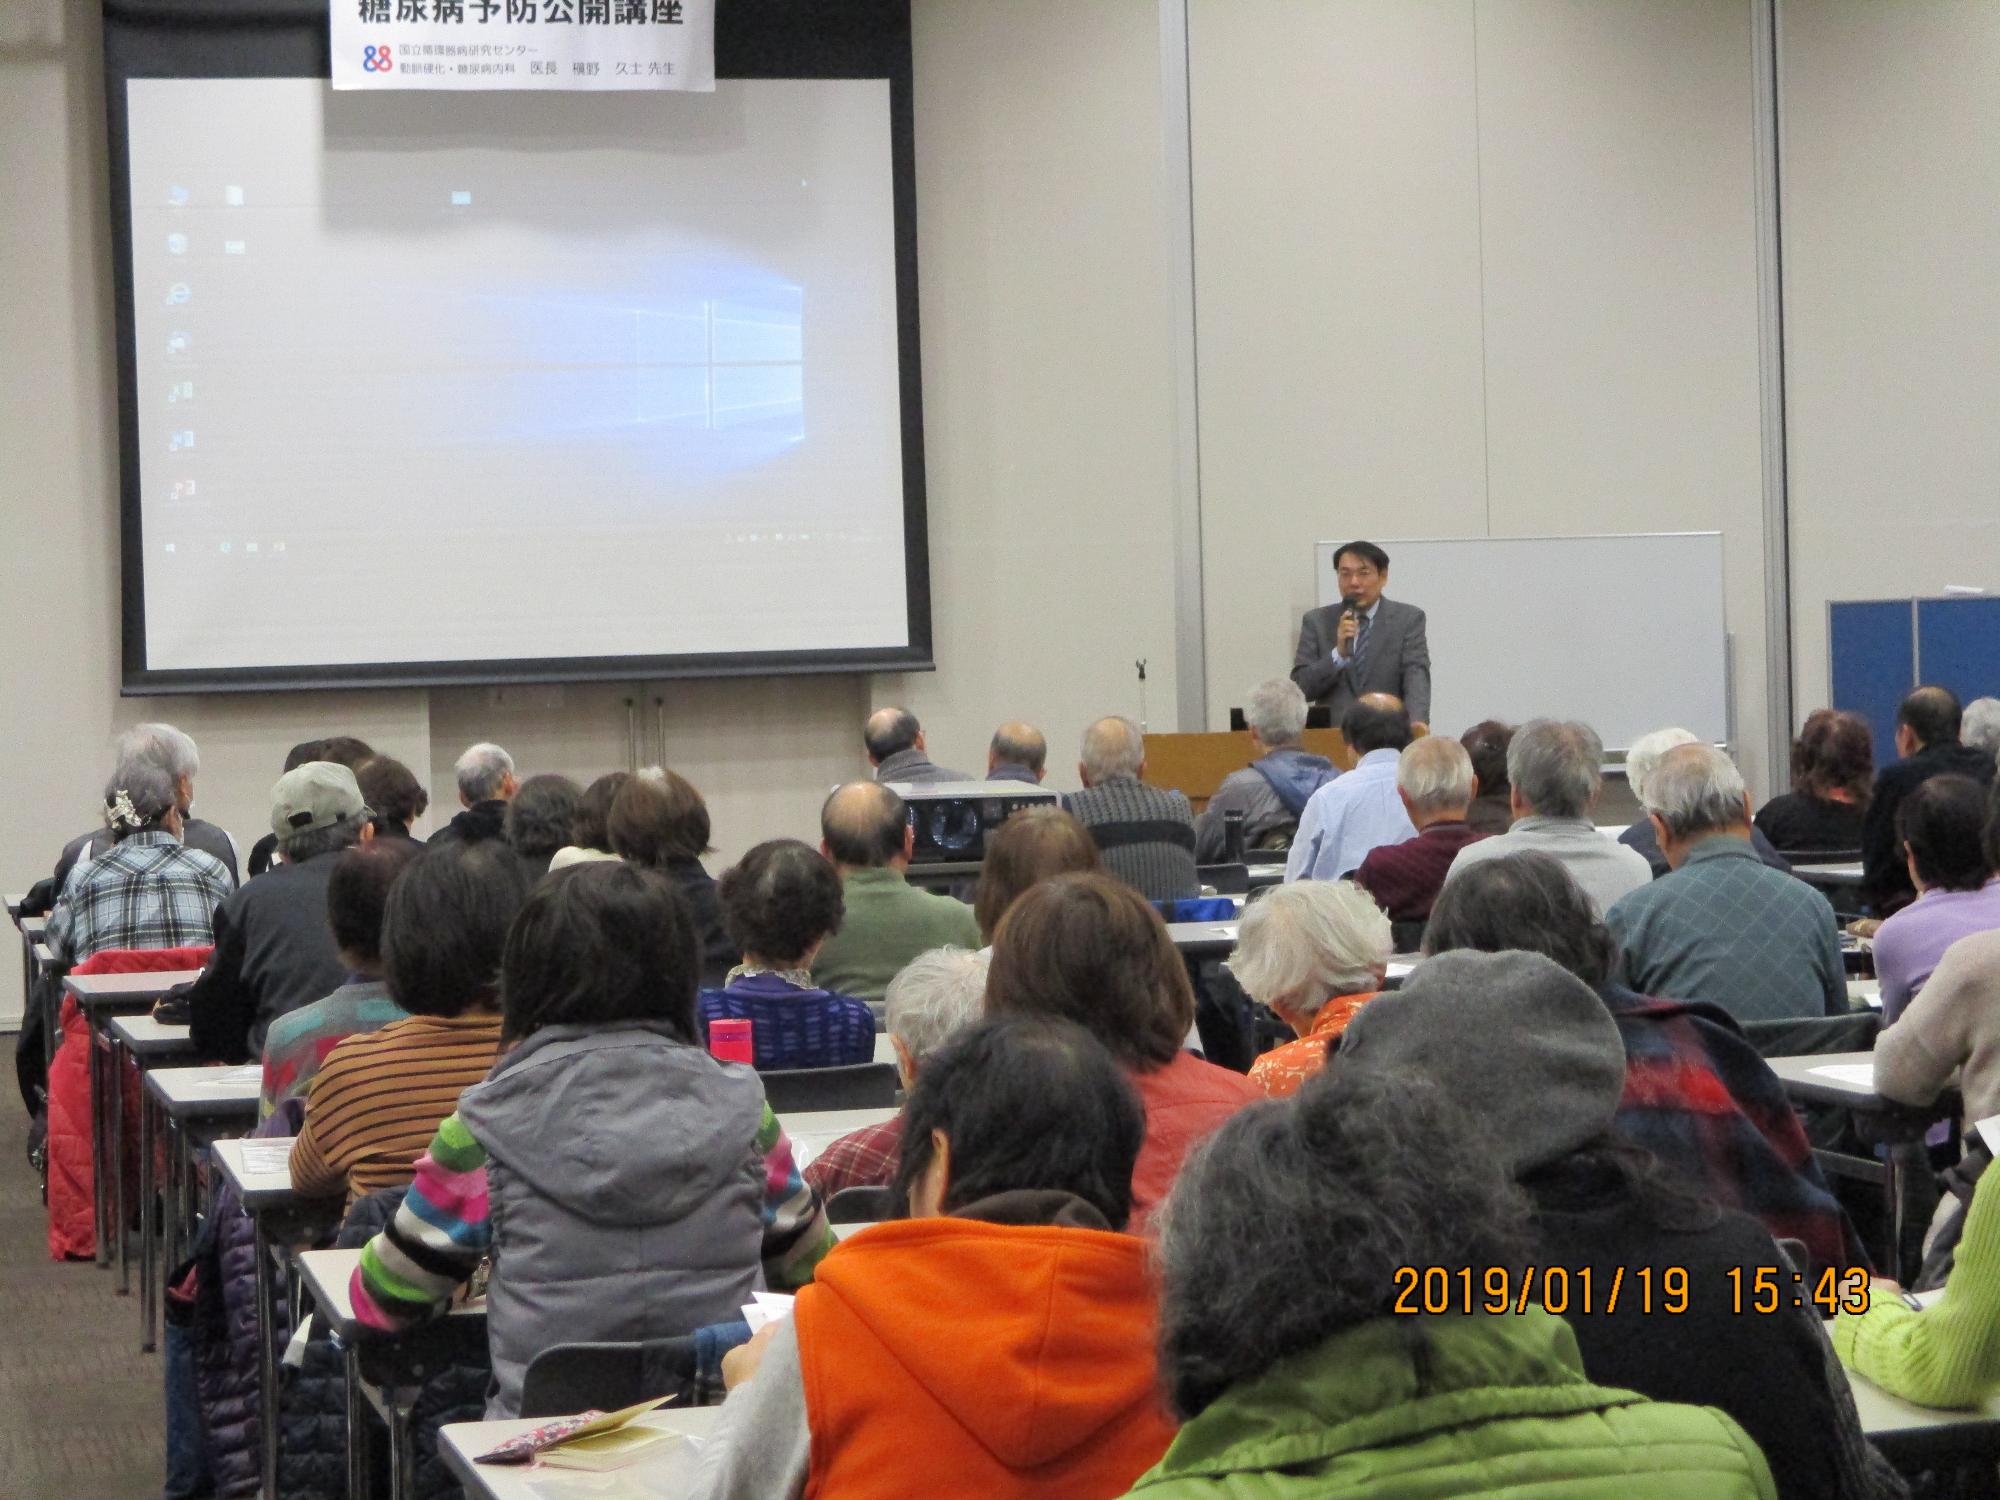 摂津市コミュニティプラザで多くの方が槇野久士氏による講演を聞いている写真